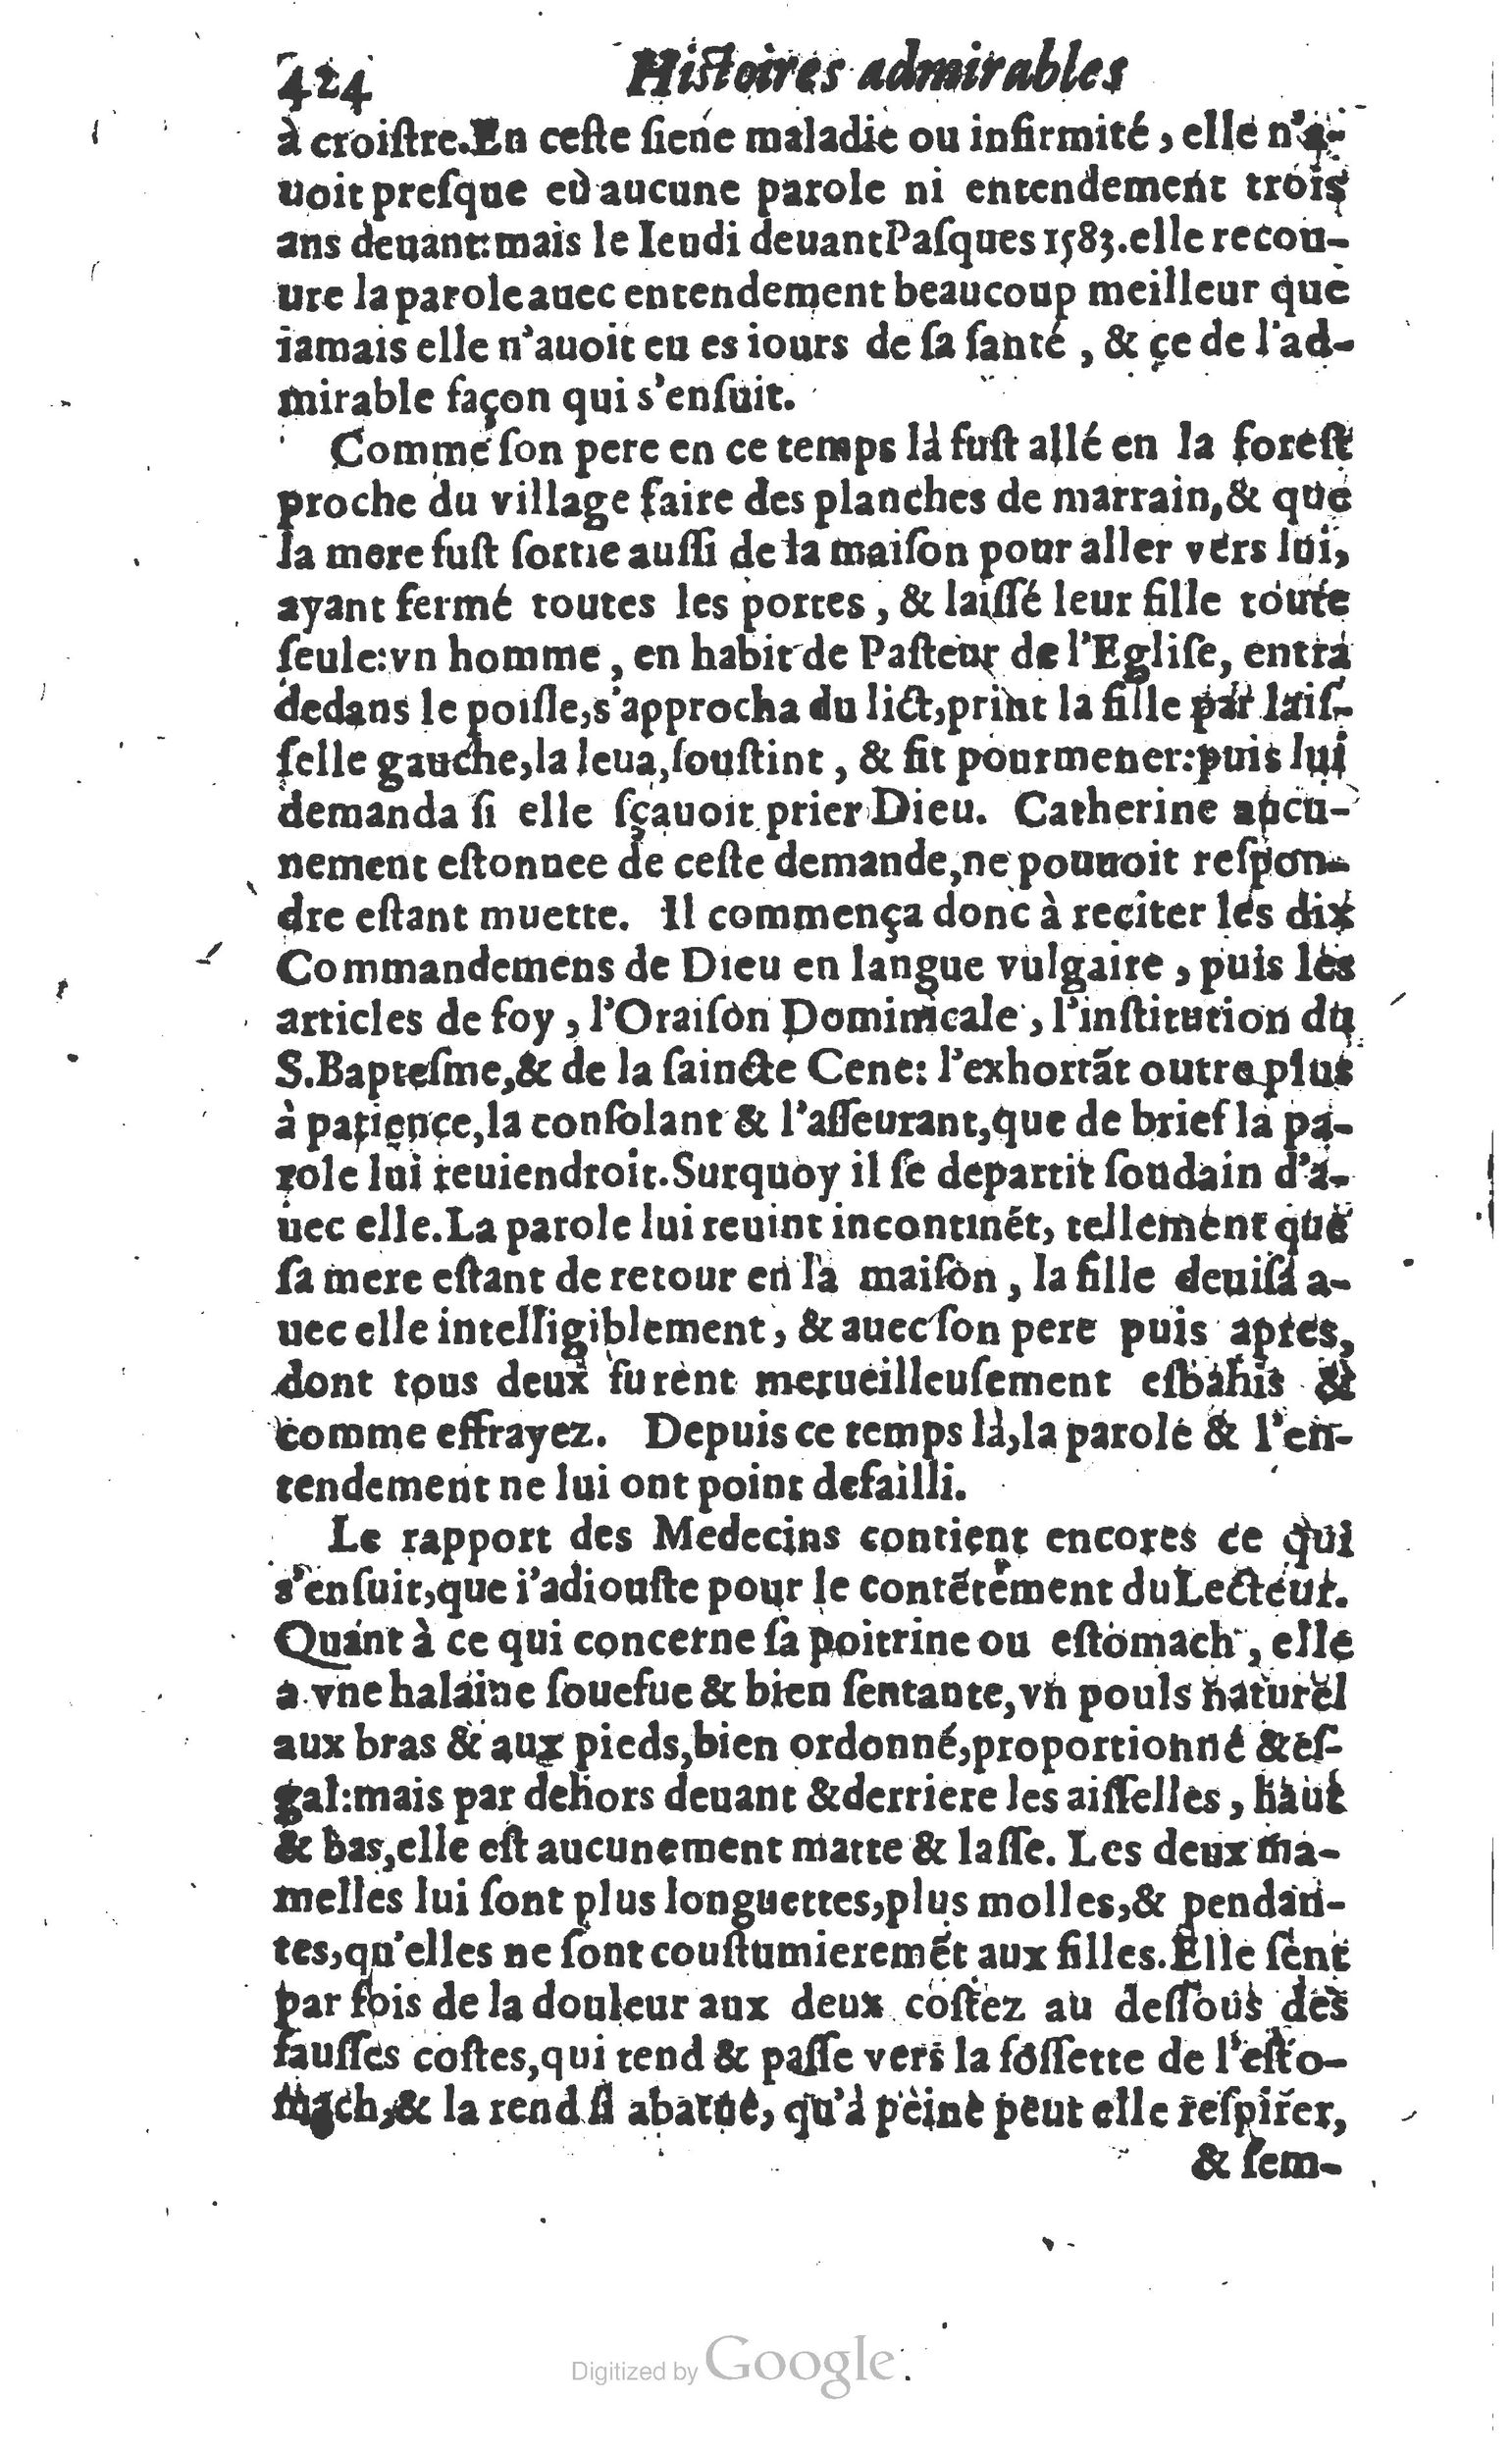 1610 Trésor d’histoires admirables et mémorables de nostre temps Marceau Princeton_Page_0445.jpg